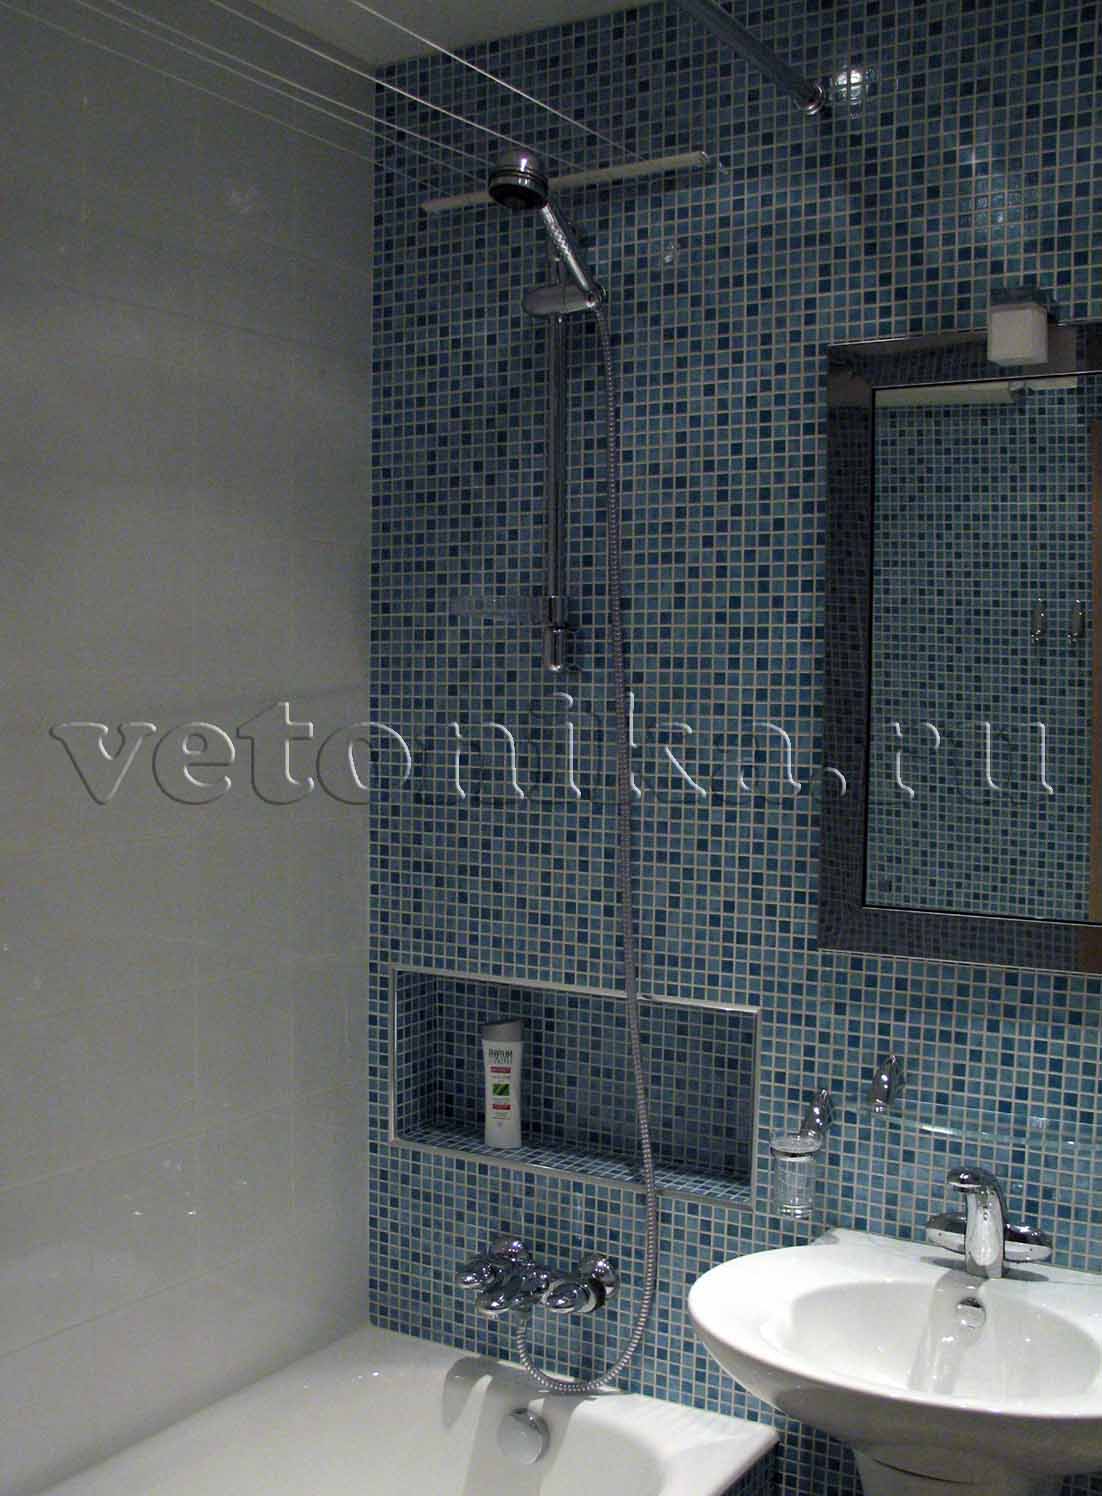 Ванна Jacob Delafon коллекция Soissons 160*70см. Смесители для ванны и раковины Jacob Delafon коллекция Galatee